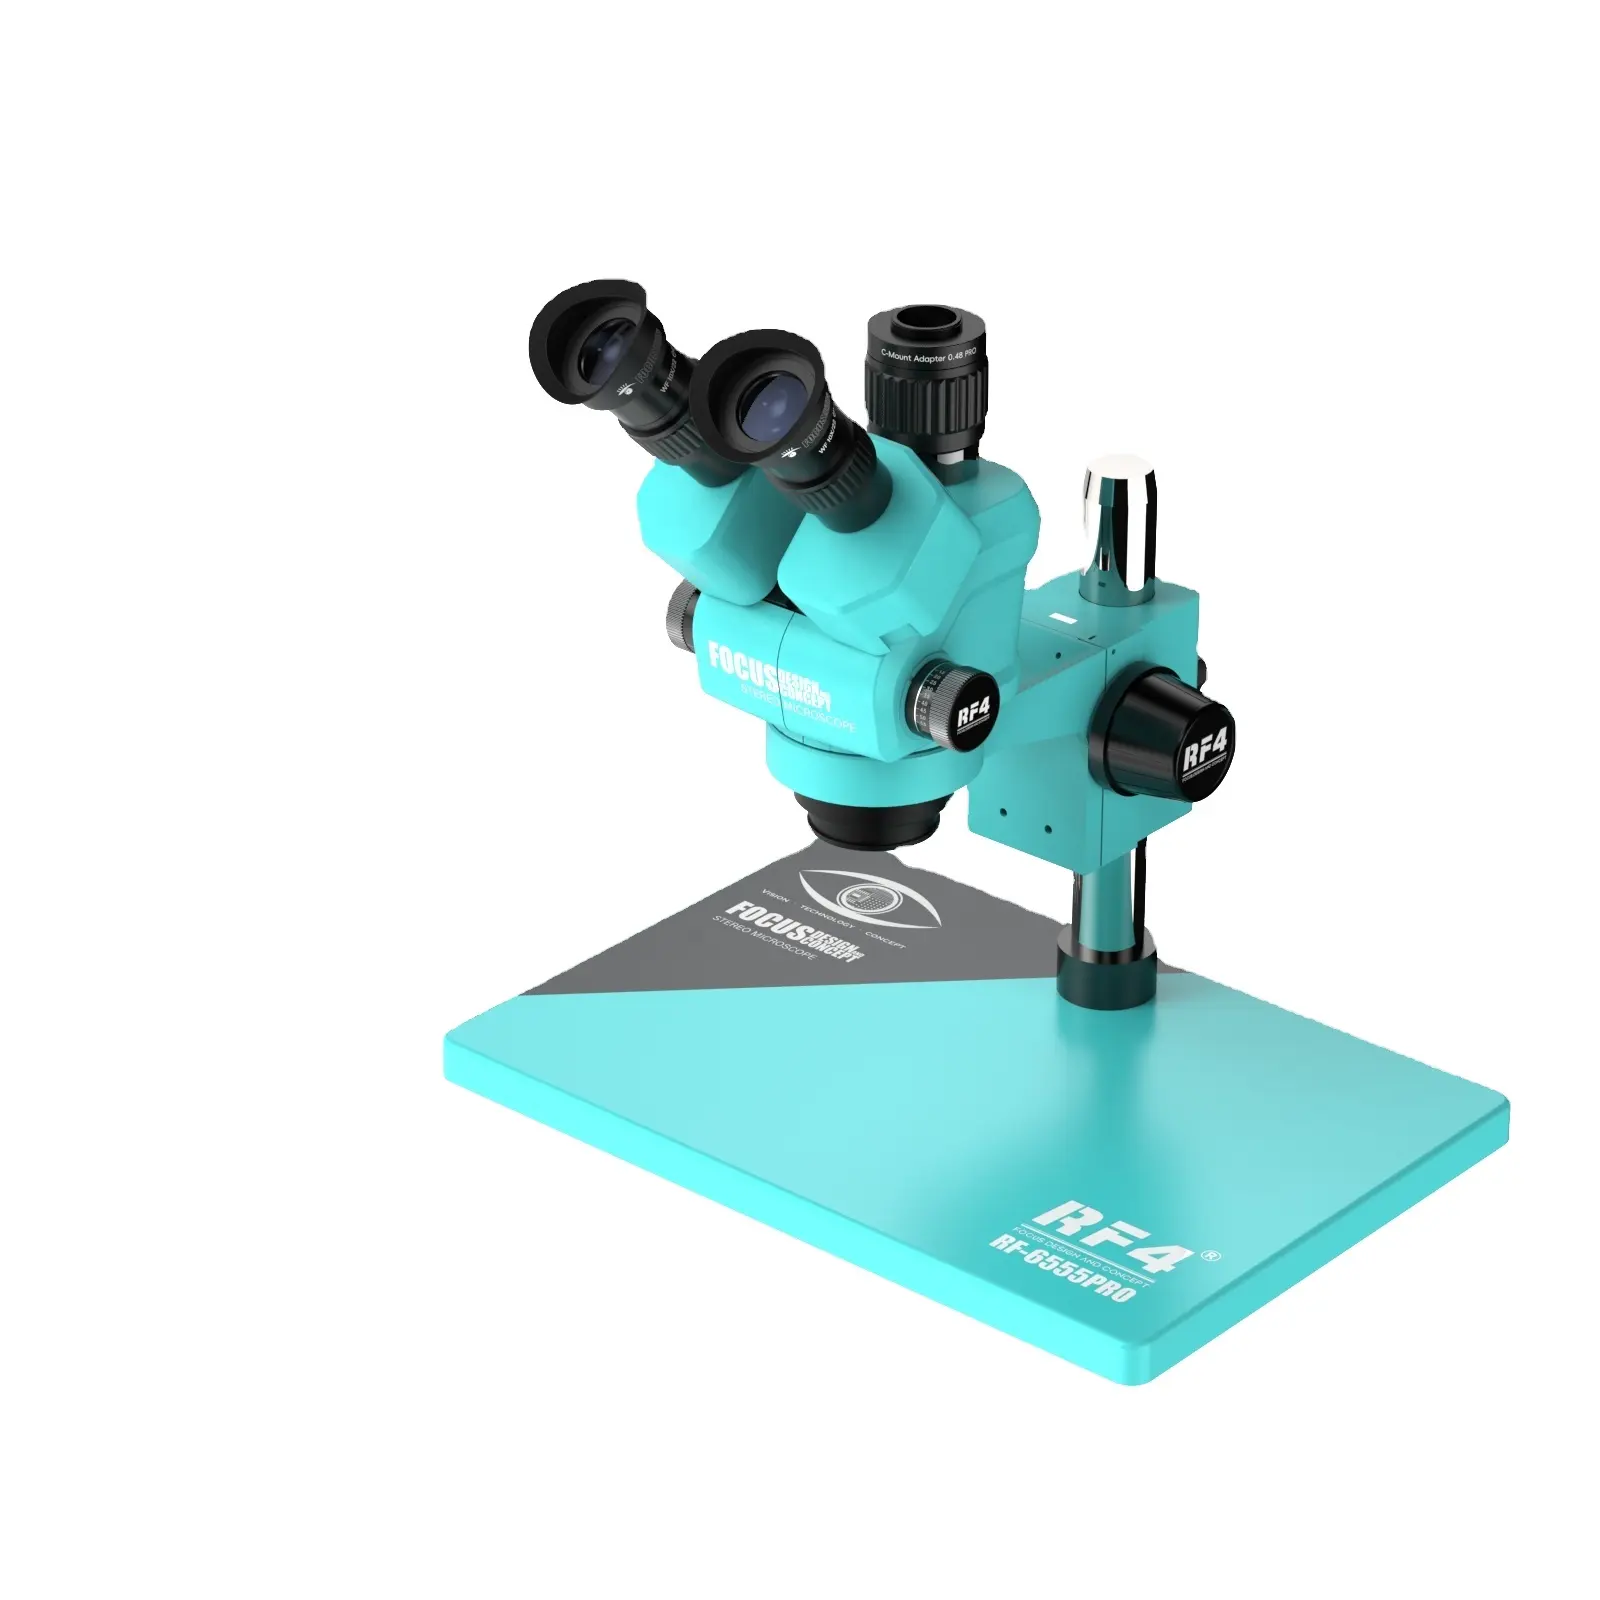 De Nieuwe Rf4 6555pro Kan 6.5-65x Zoom Stereoscopische Trioculaire Microscoop Voor Mobiele Telefoon Lasreparatie Continu Vergroten